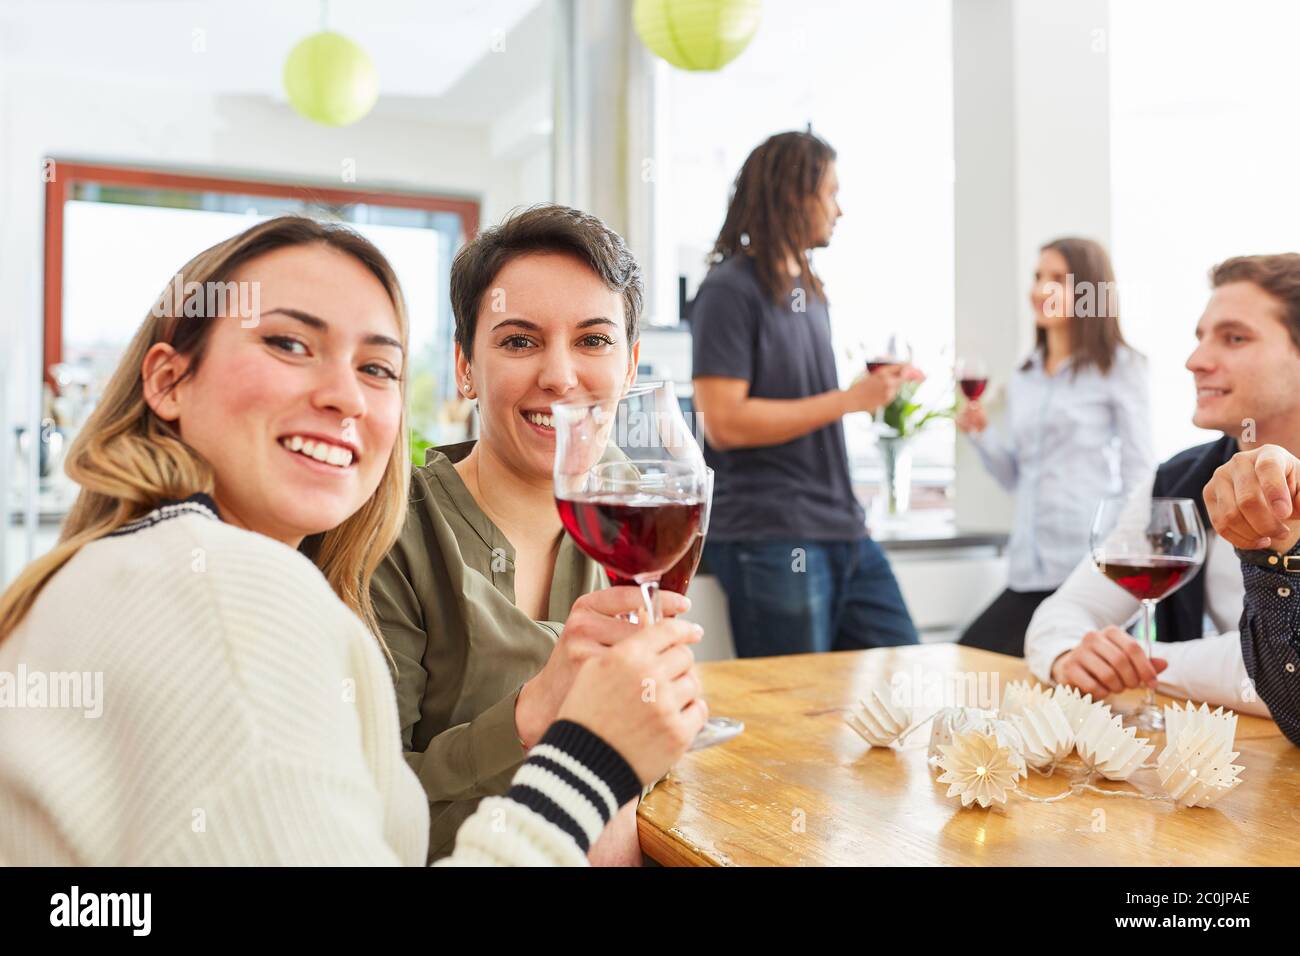 Deux femmes heureuses comme des amis toastent avec un verre de vin pour célébrer dans une cuisine Banque D'Images